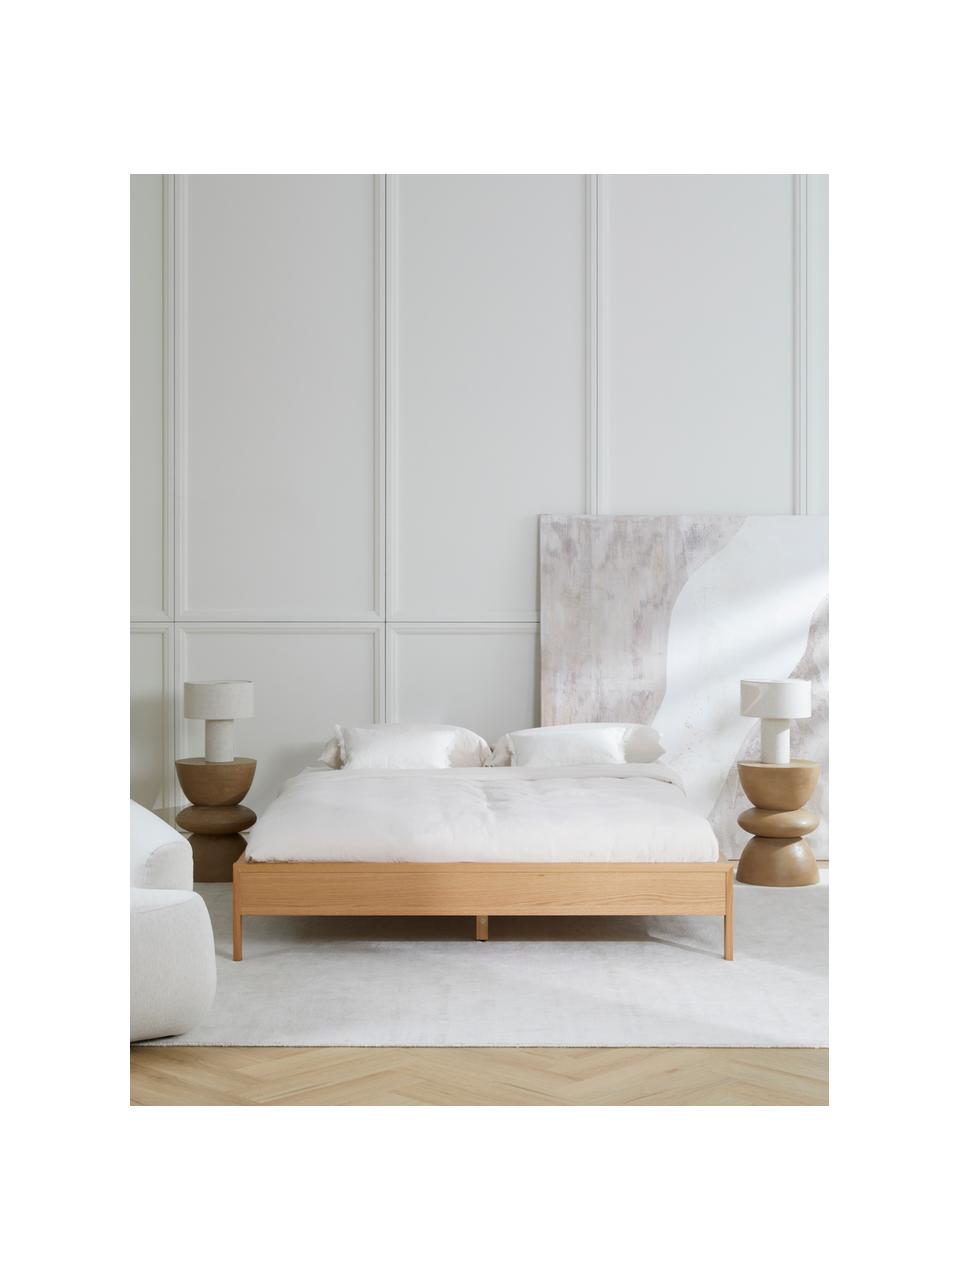 Łóżko z drewna bez zagłówka Tammy, Drewno naturalne z fornirem z drewna dębowego, Drewno dębowe, S 160 x D 200 cm